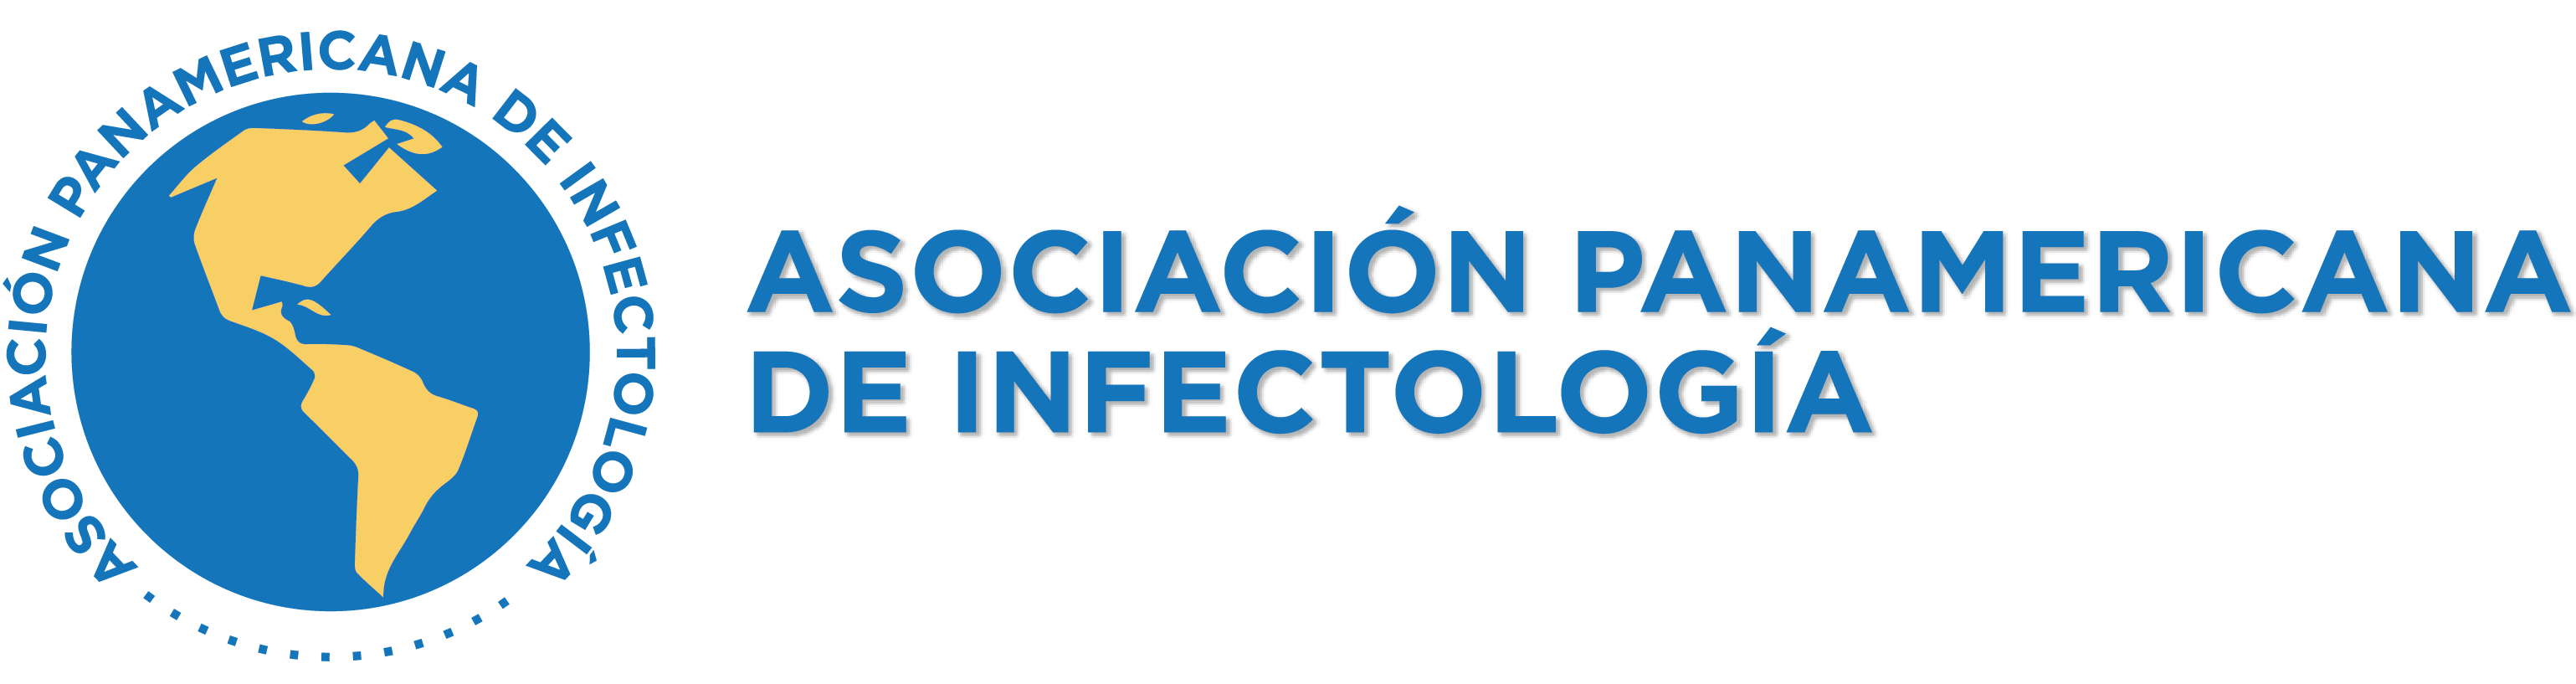 Asociación Panamericana de Infectología